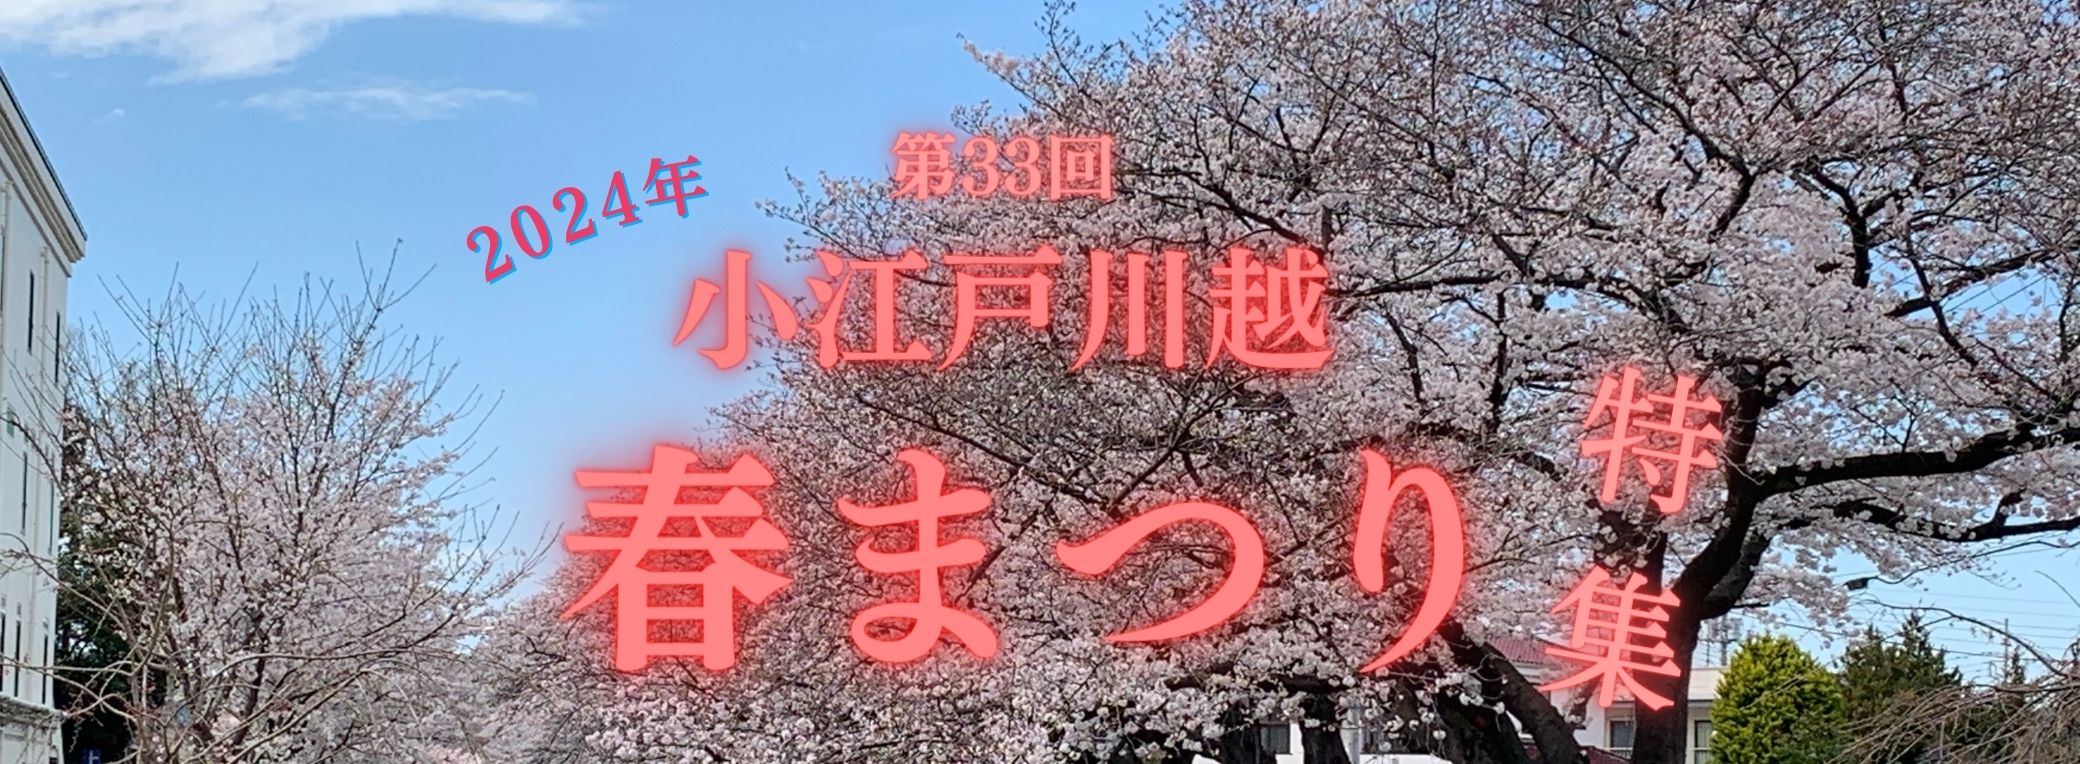 33rd Little Edo Kawagoe Spring Festival held